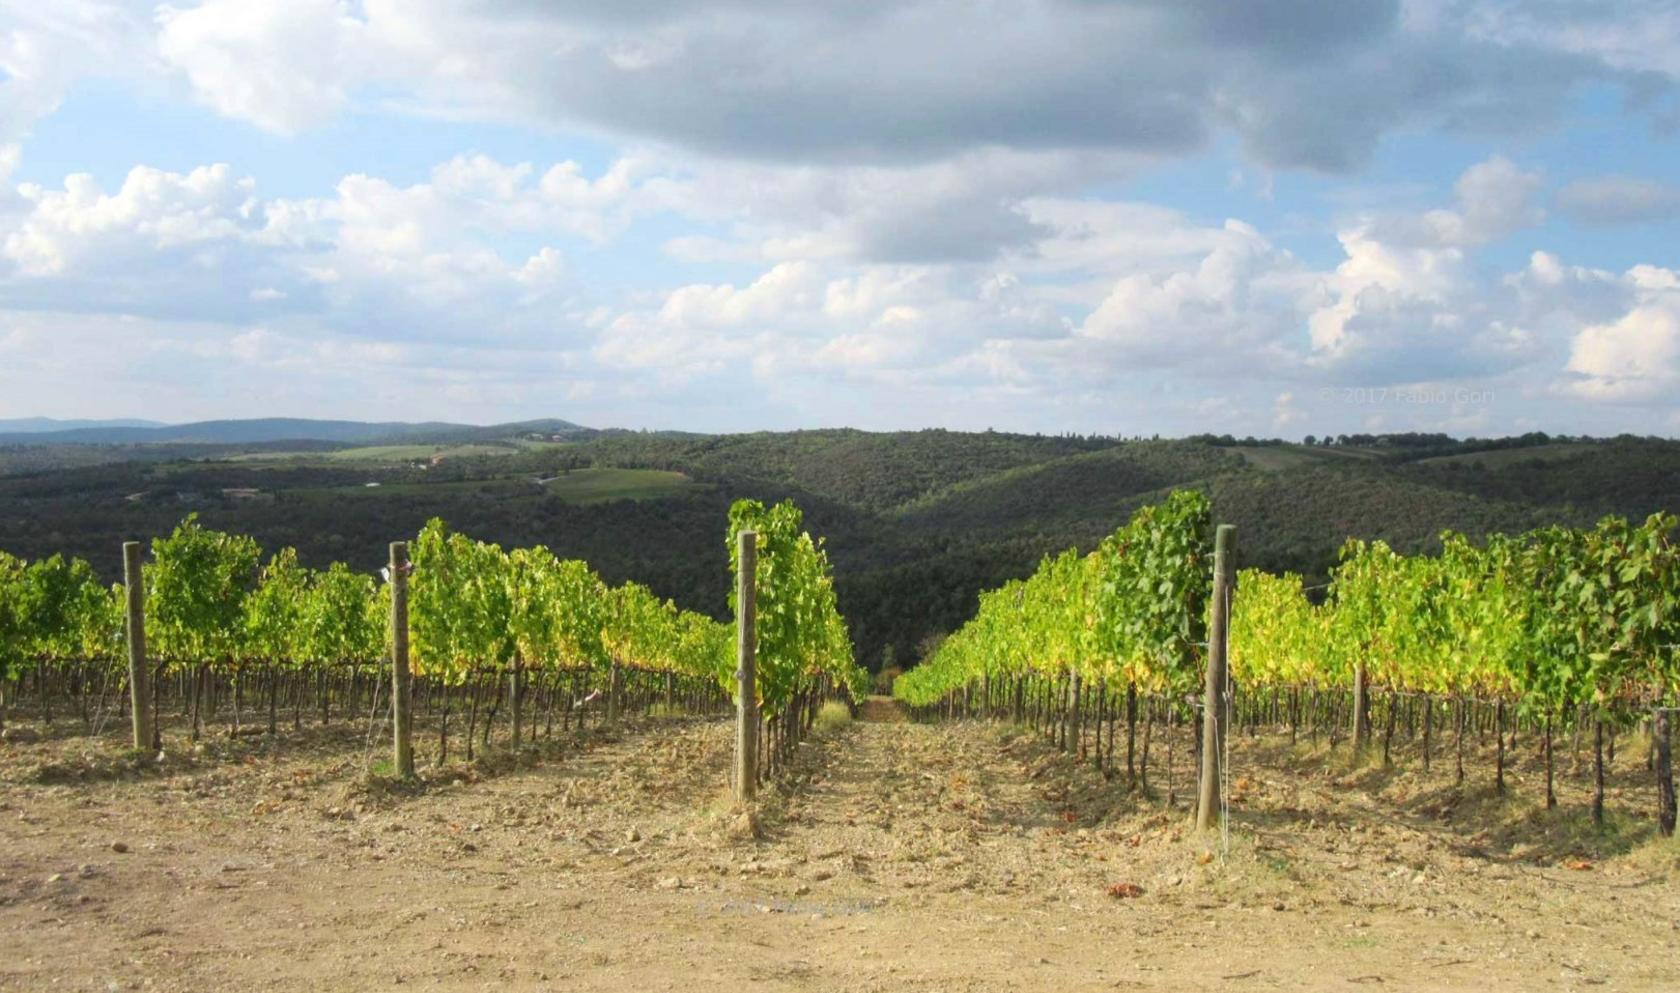 Toscana Immobiliare - winery estate for sale in Tuscany, Brunello area